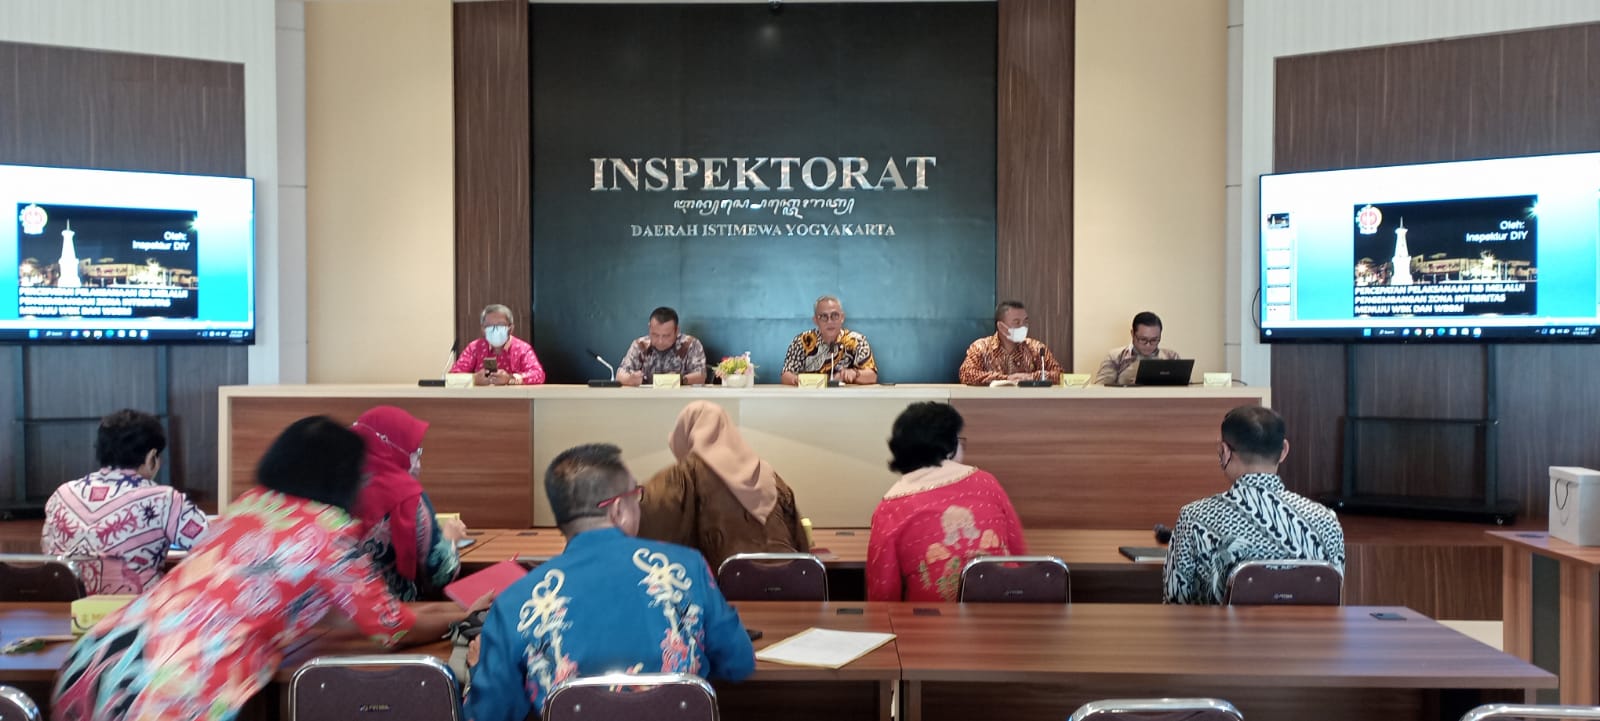 Kaji Tiru Pembangunan Zona Integritas pada Perangkat Daerah Lingkup Pemerintah Daerah Daerah Istimewa Yogyakarta